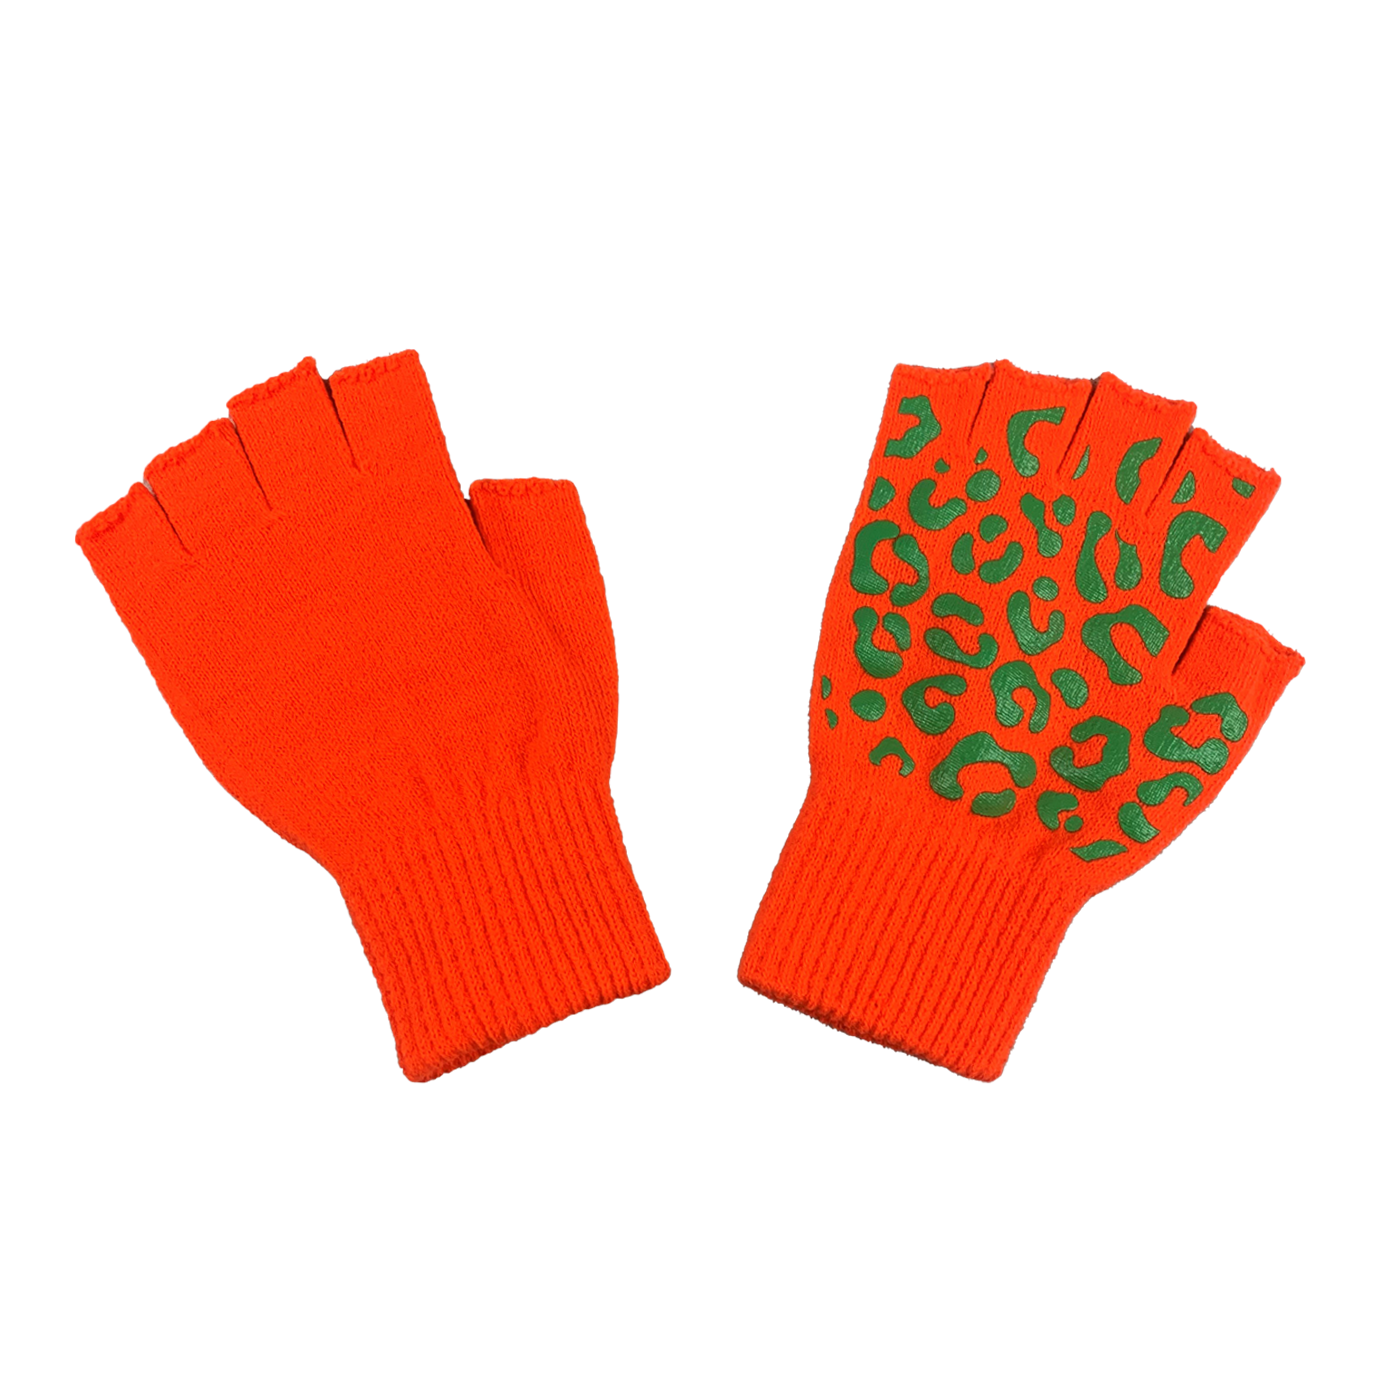 Kruikenstad handschoenen panterprint kopen